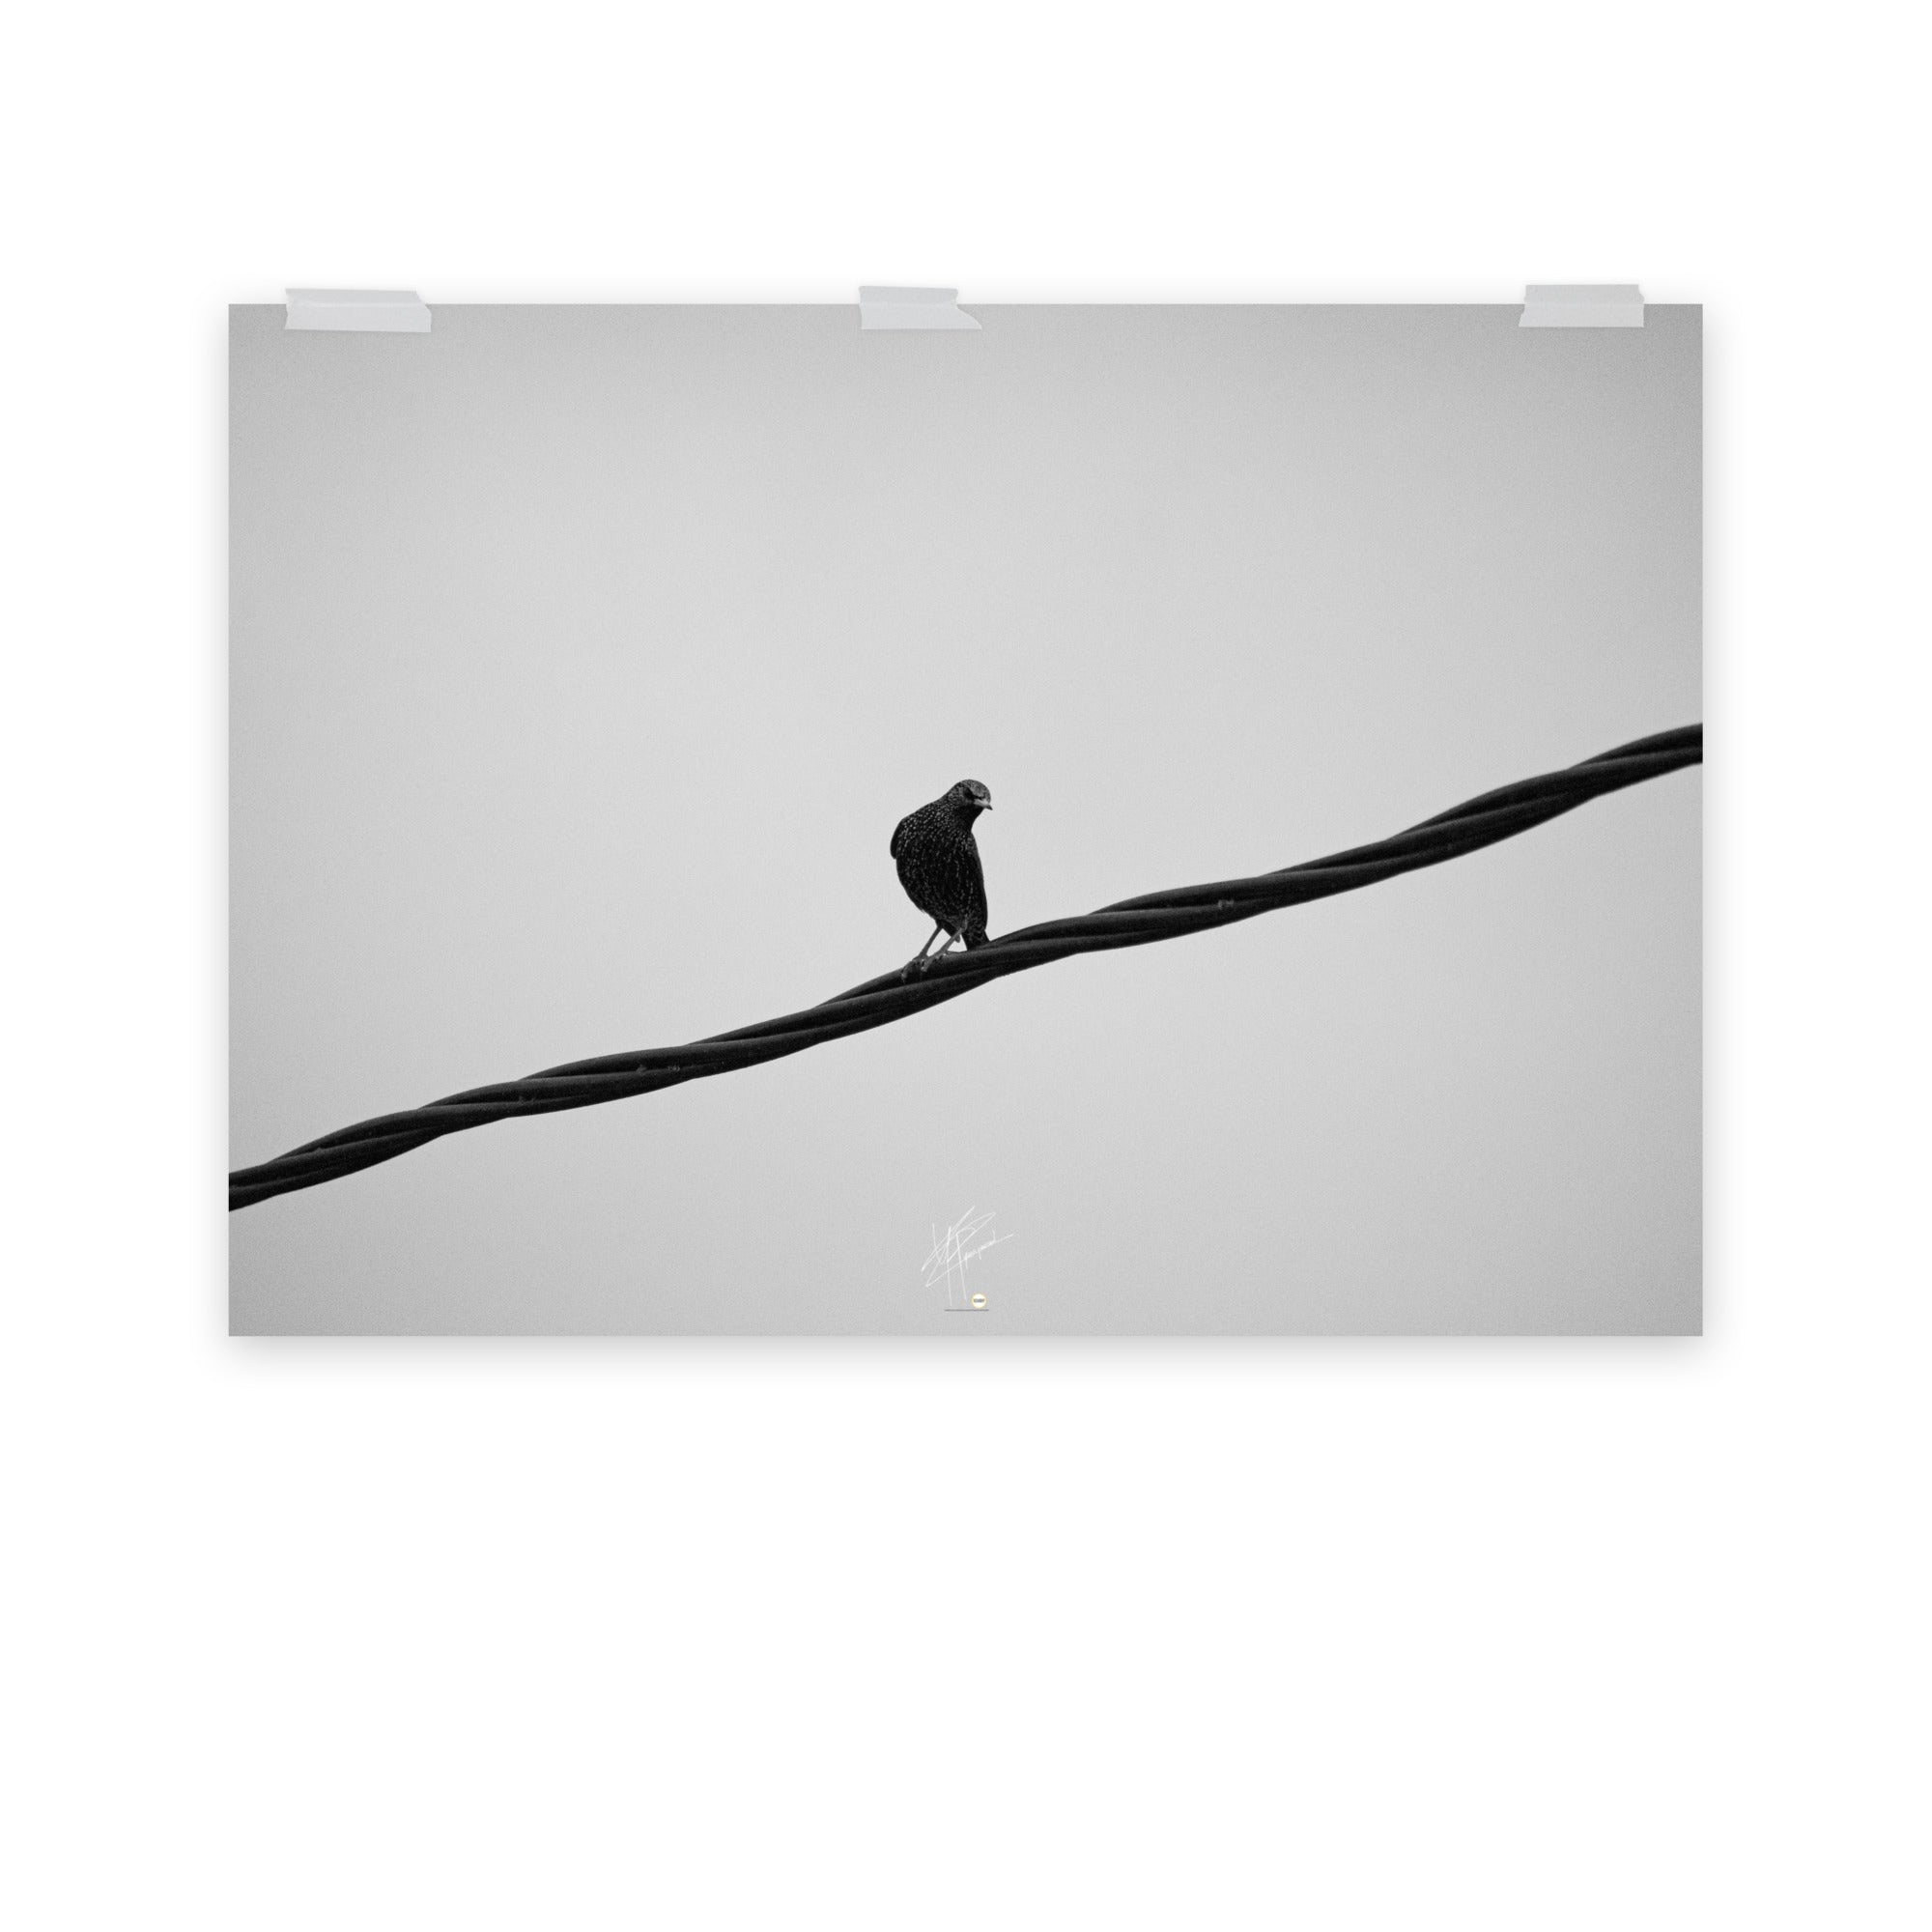 Photographie en noir et blanc d'un oiseau seul perché sur un câble haute tension, avec un ciel nuageux en arrière-plan, évoquant le contraste entre la nature et la technologie.